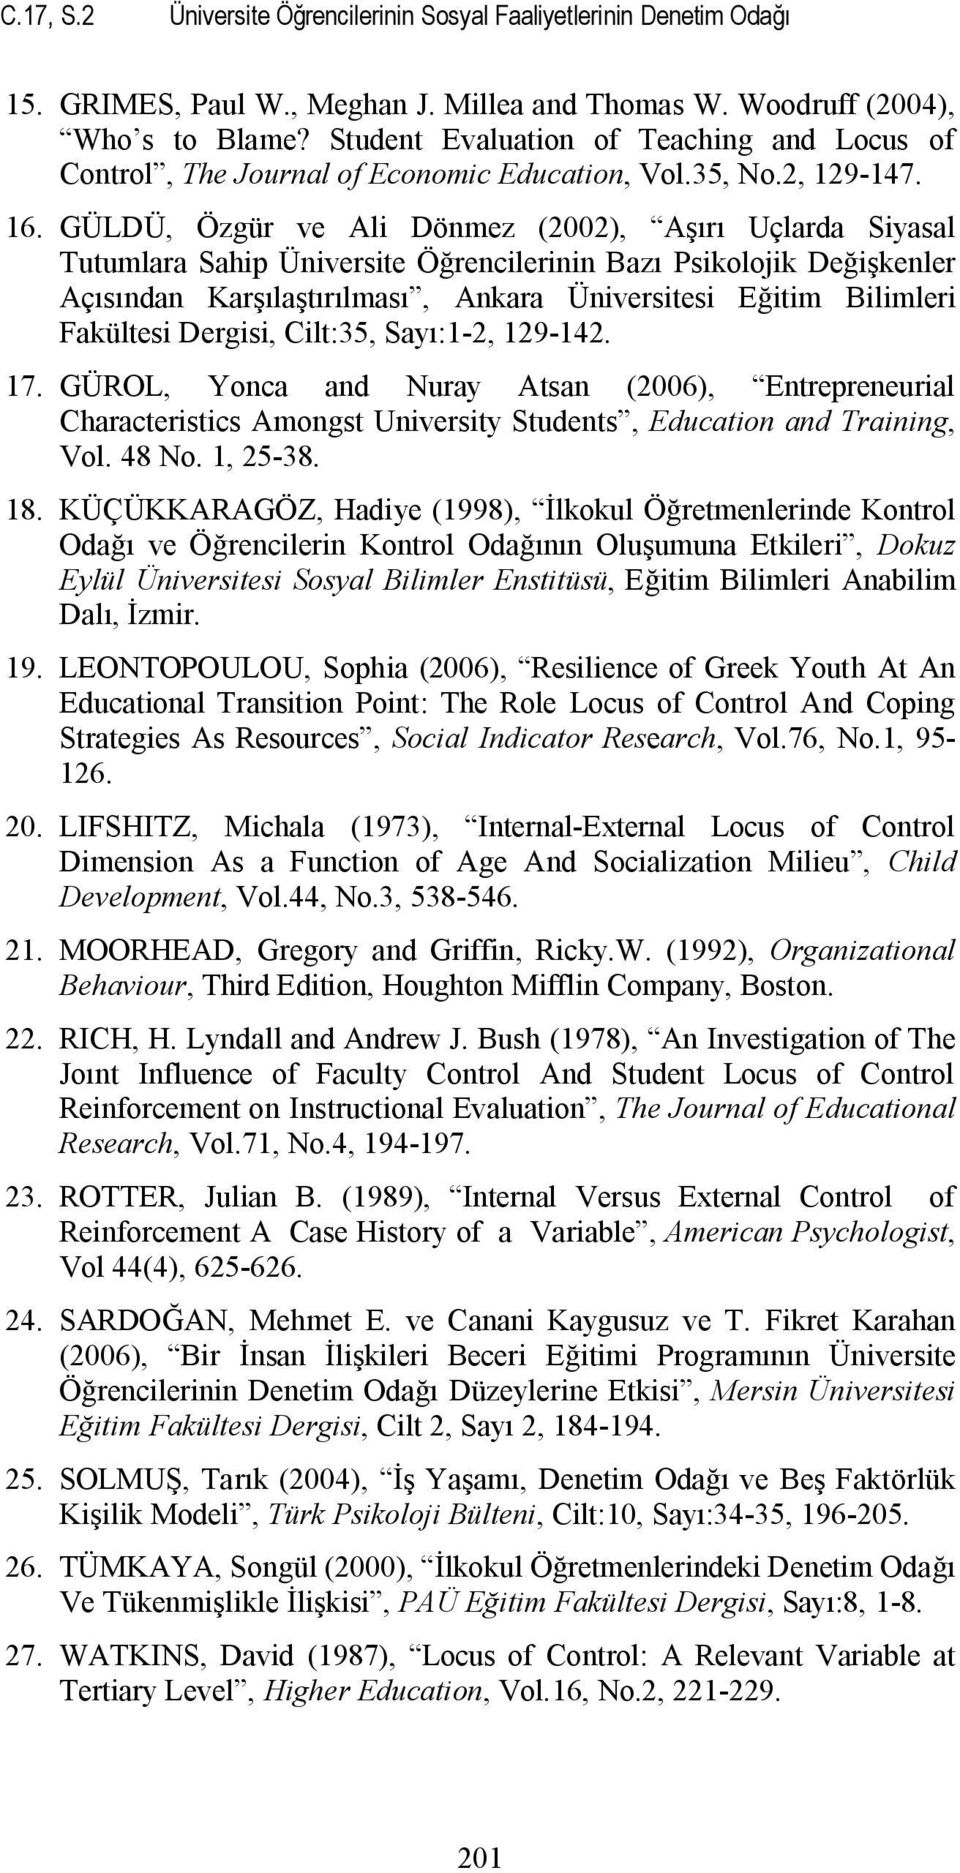 GÜLDÜ, Özgür ve Ali Dönmez (2002), Aşırı Uçlarda Siyasal Tutumlara Sahip Üniversite Öğrencilerinin Bazı Psikolojik Değişkenler Açısından Karşılaştırılması, Ankara Üniversitesi Eğitim Bilimleri